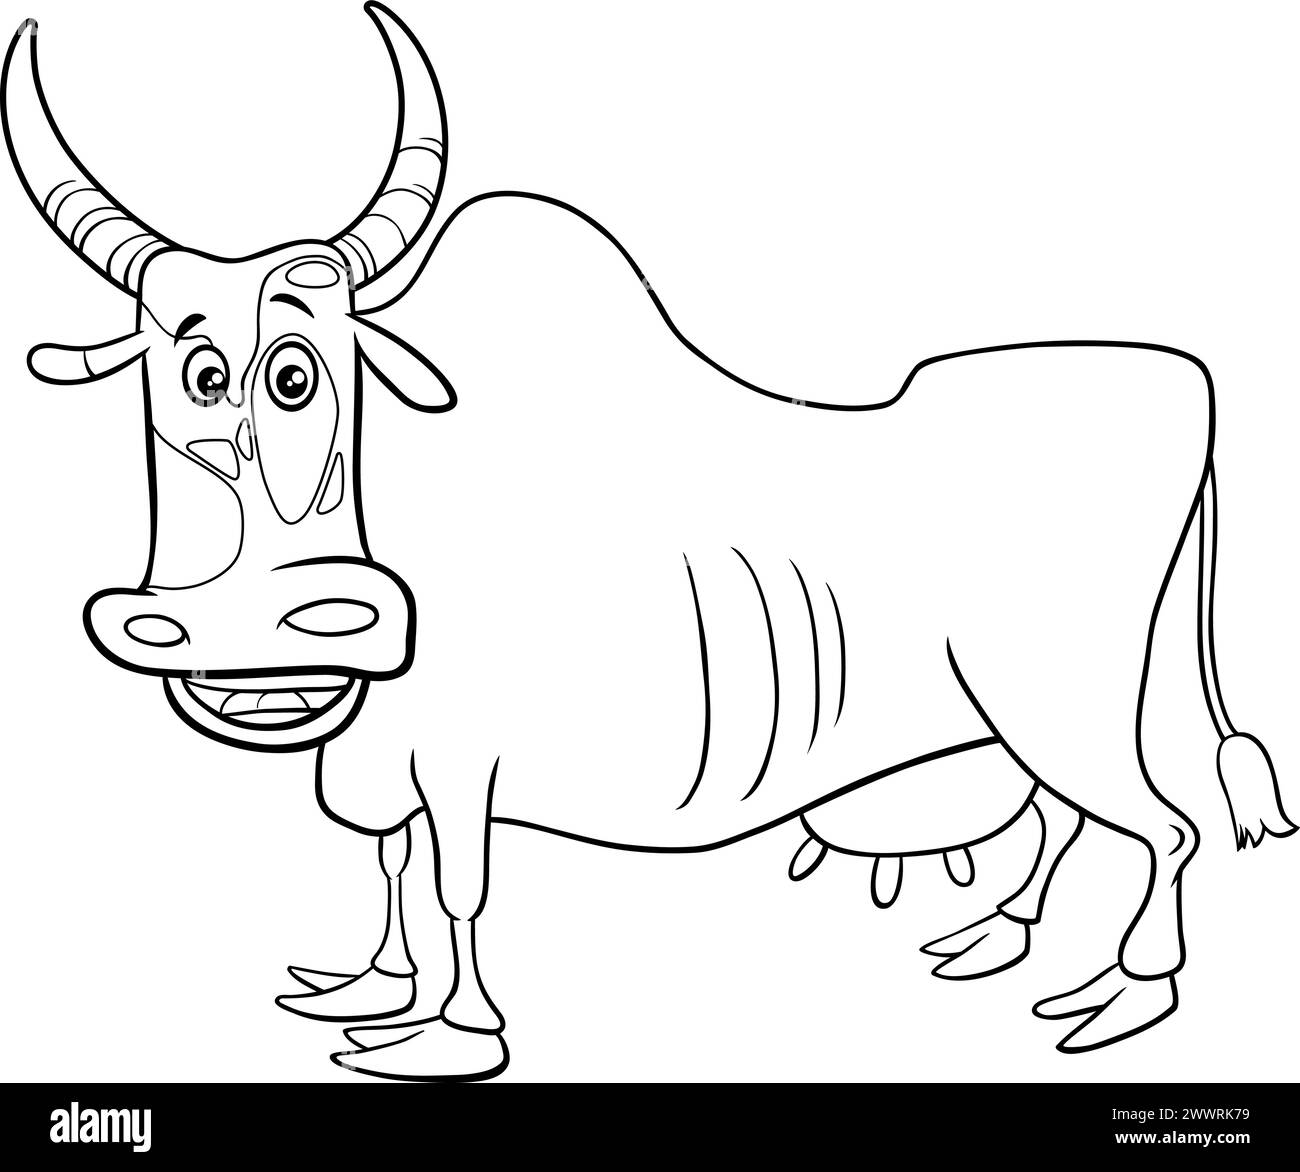 Zeichentrickillustration der Zebu-Kuh-Bauernhof-Tier-Charakterausmalseite Stock Vektor